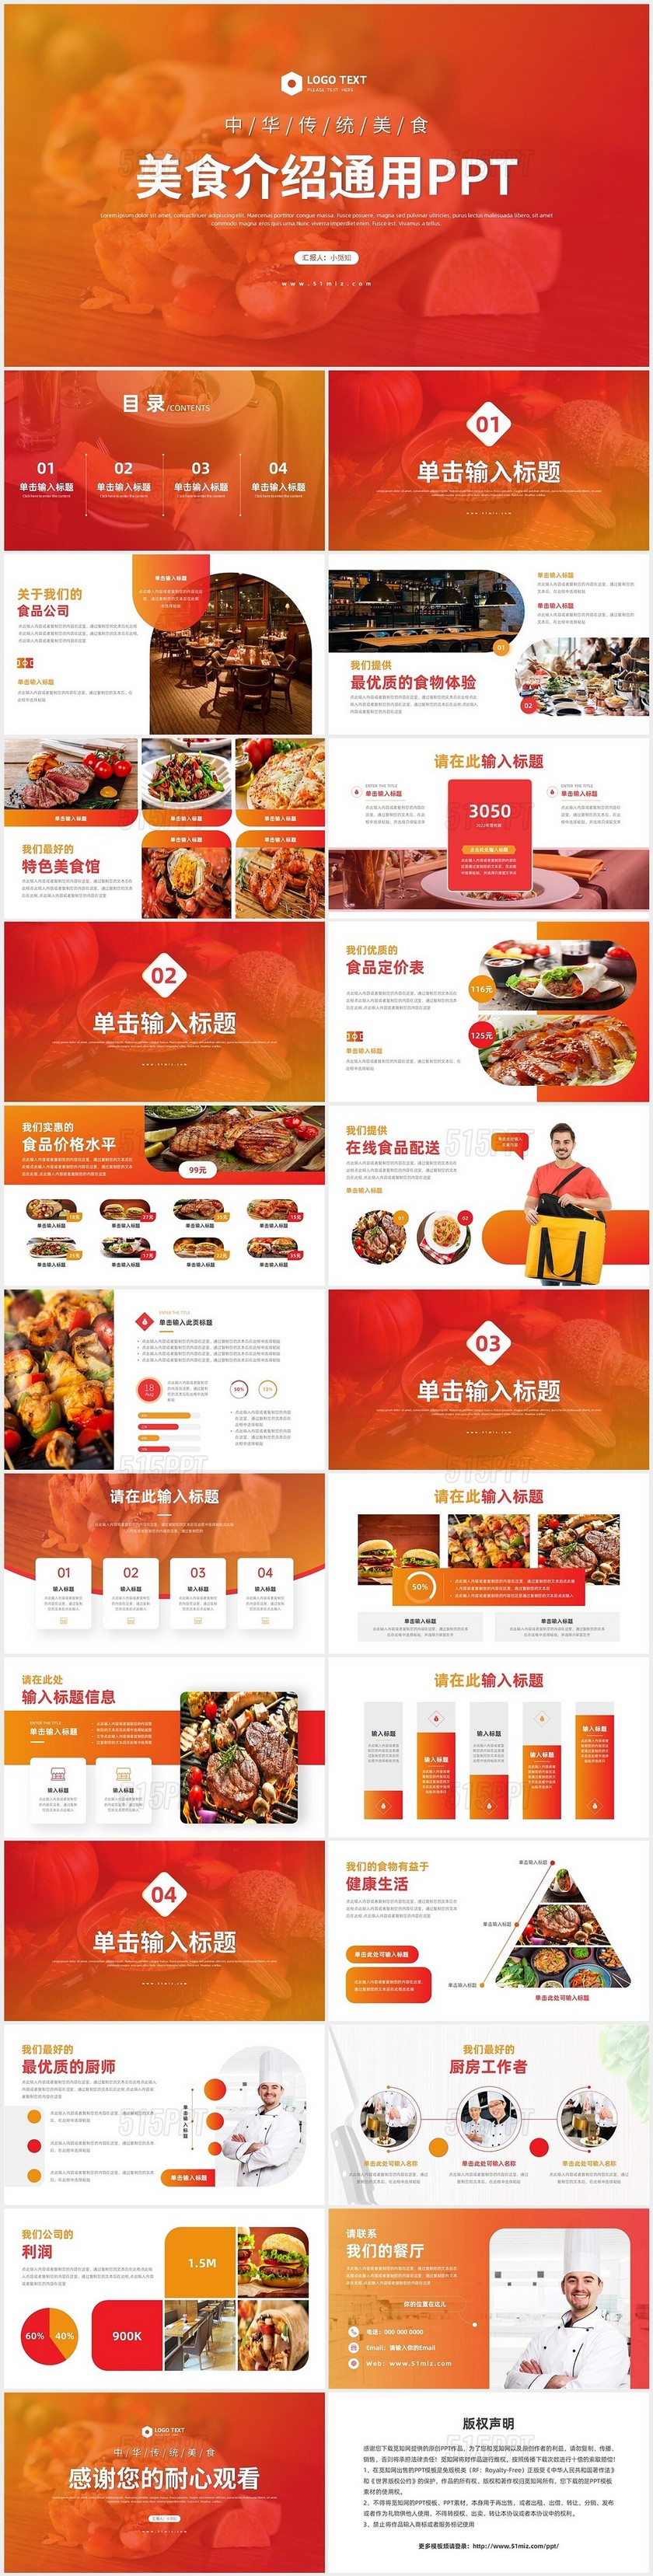 橙色大气创意餐饮美食介绍西餐中餐饮食文化ppt模板